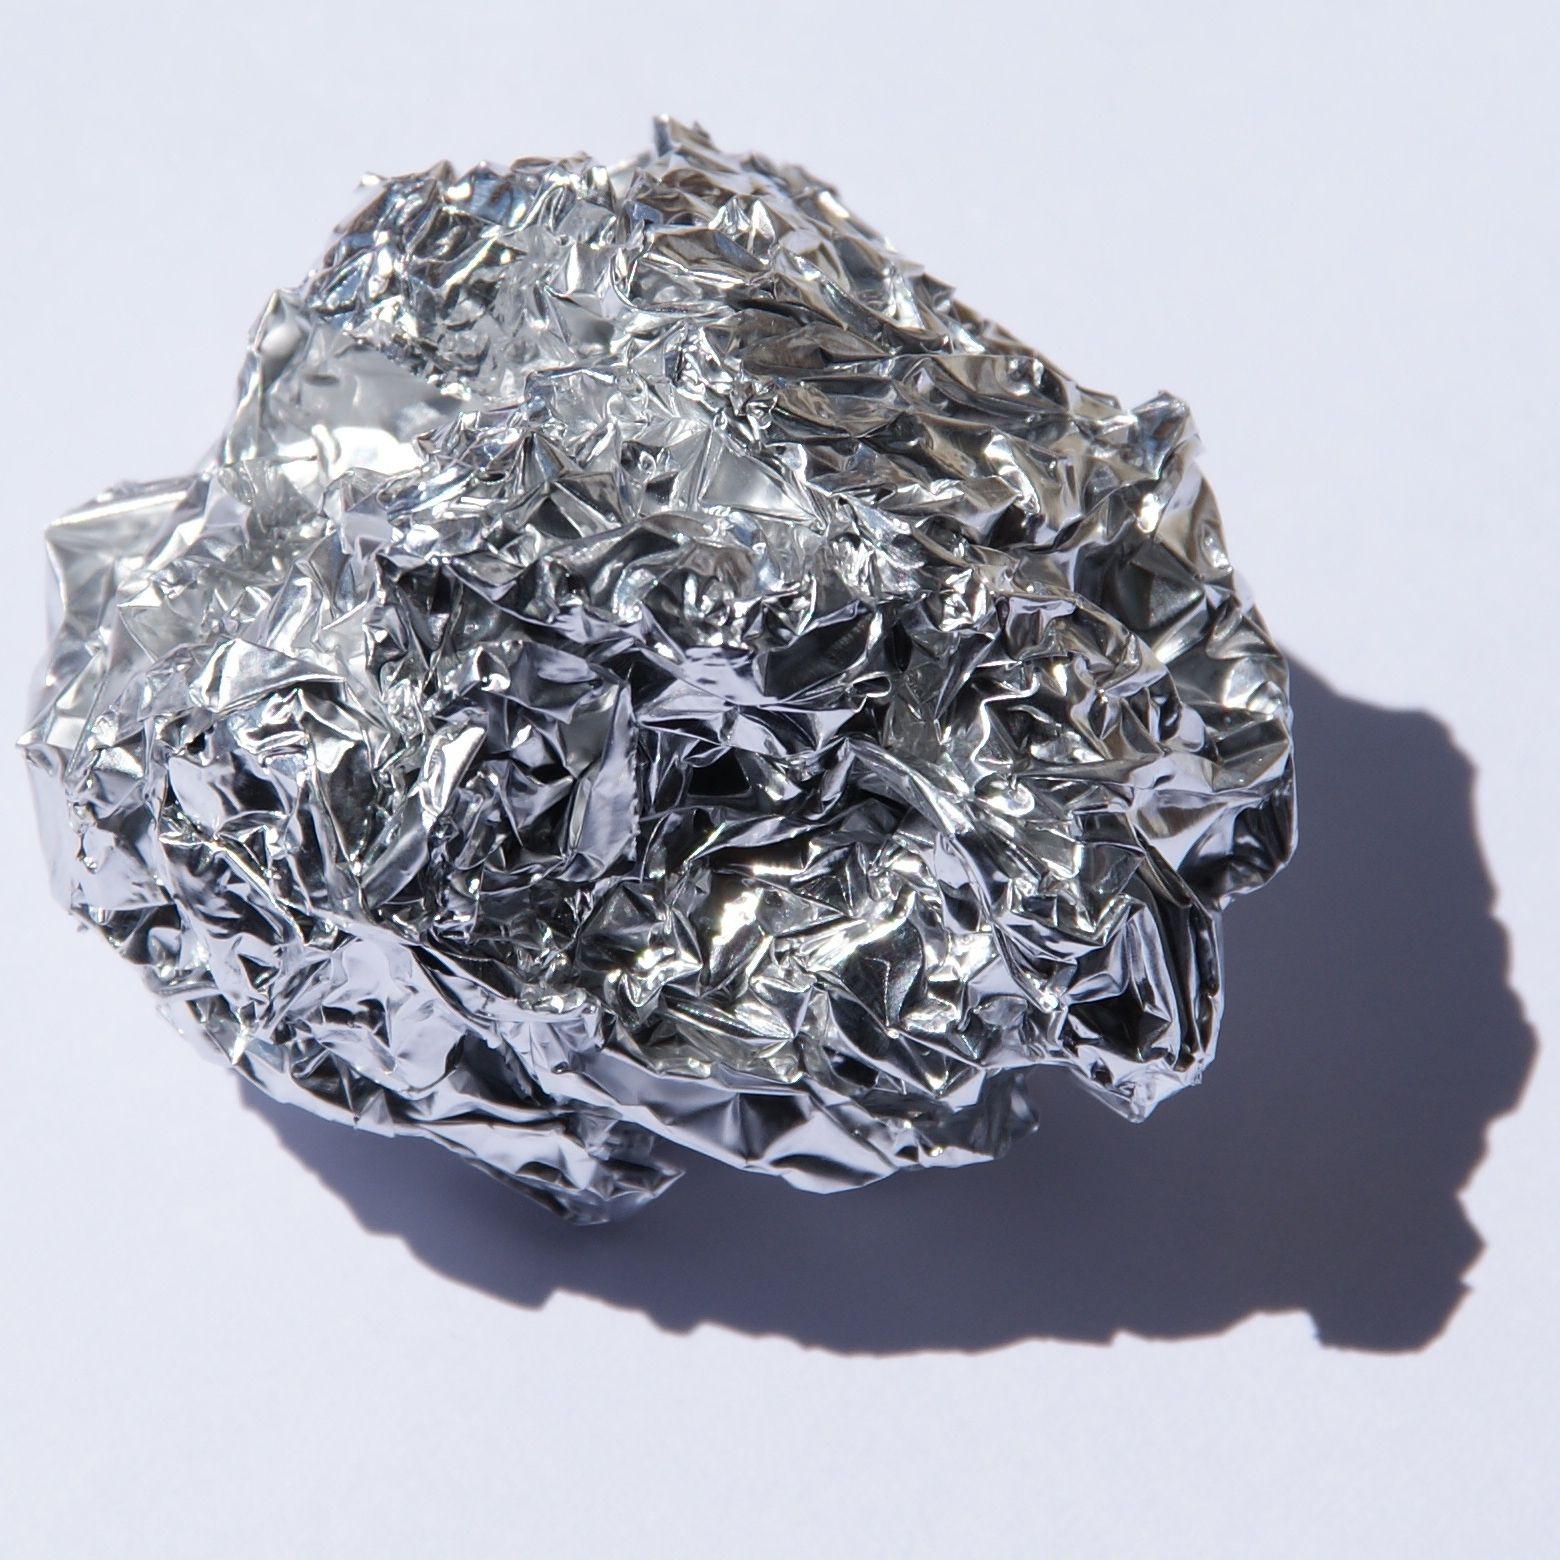 ¿Por qué el aluminio tiene baja densidad?